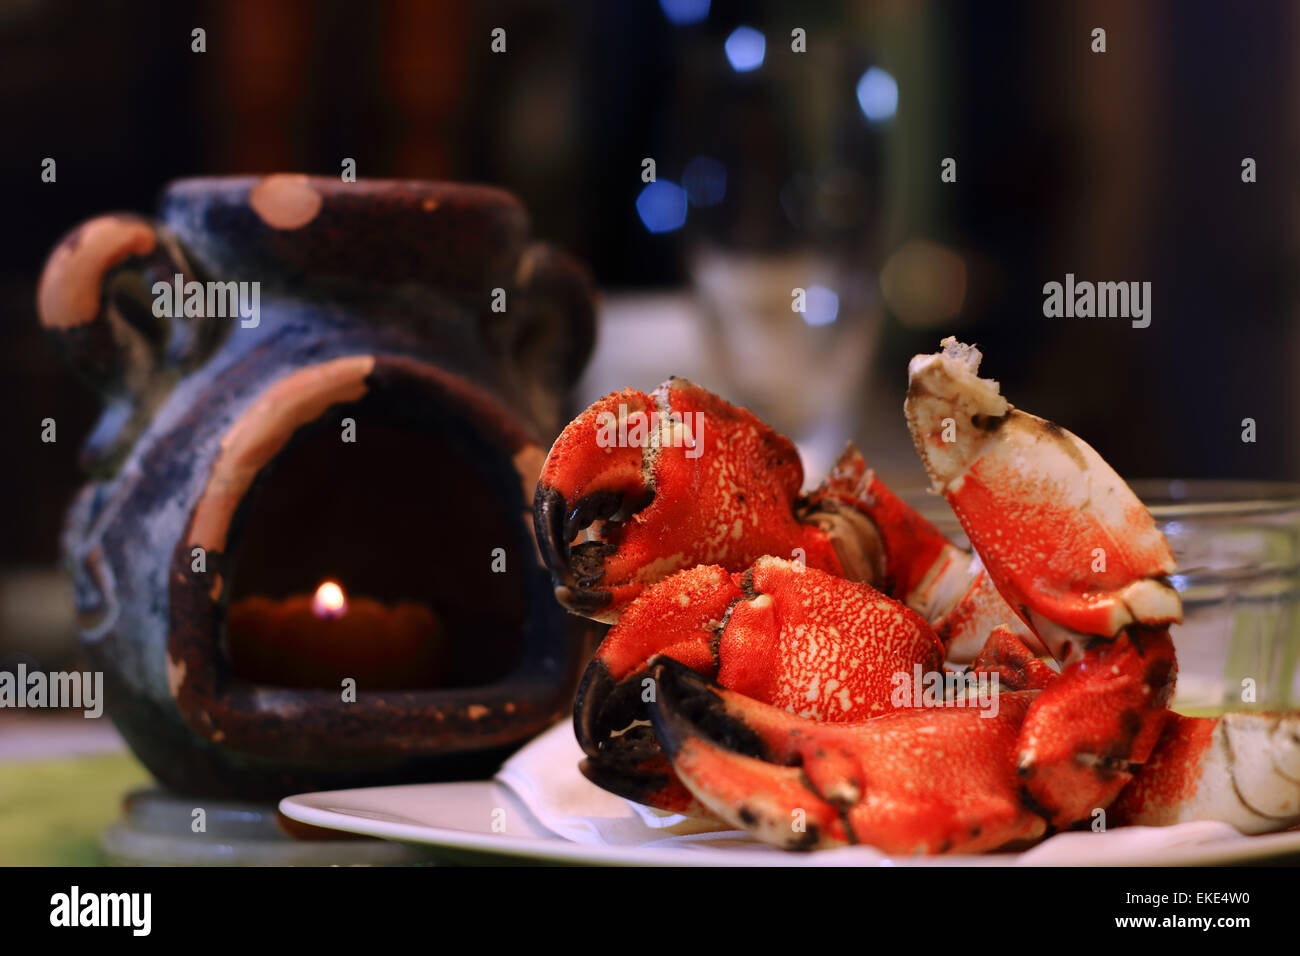 Jonás Cangrejo garras sobre una placa, con luz de velas y defocsed copa de vino en el restaurante. Jonás, cangrejos, aka estiércol Atlántico Foto de stock